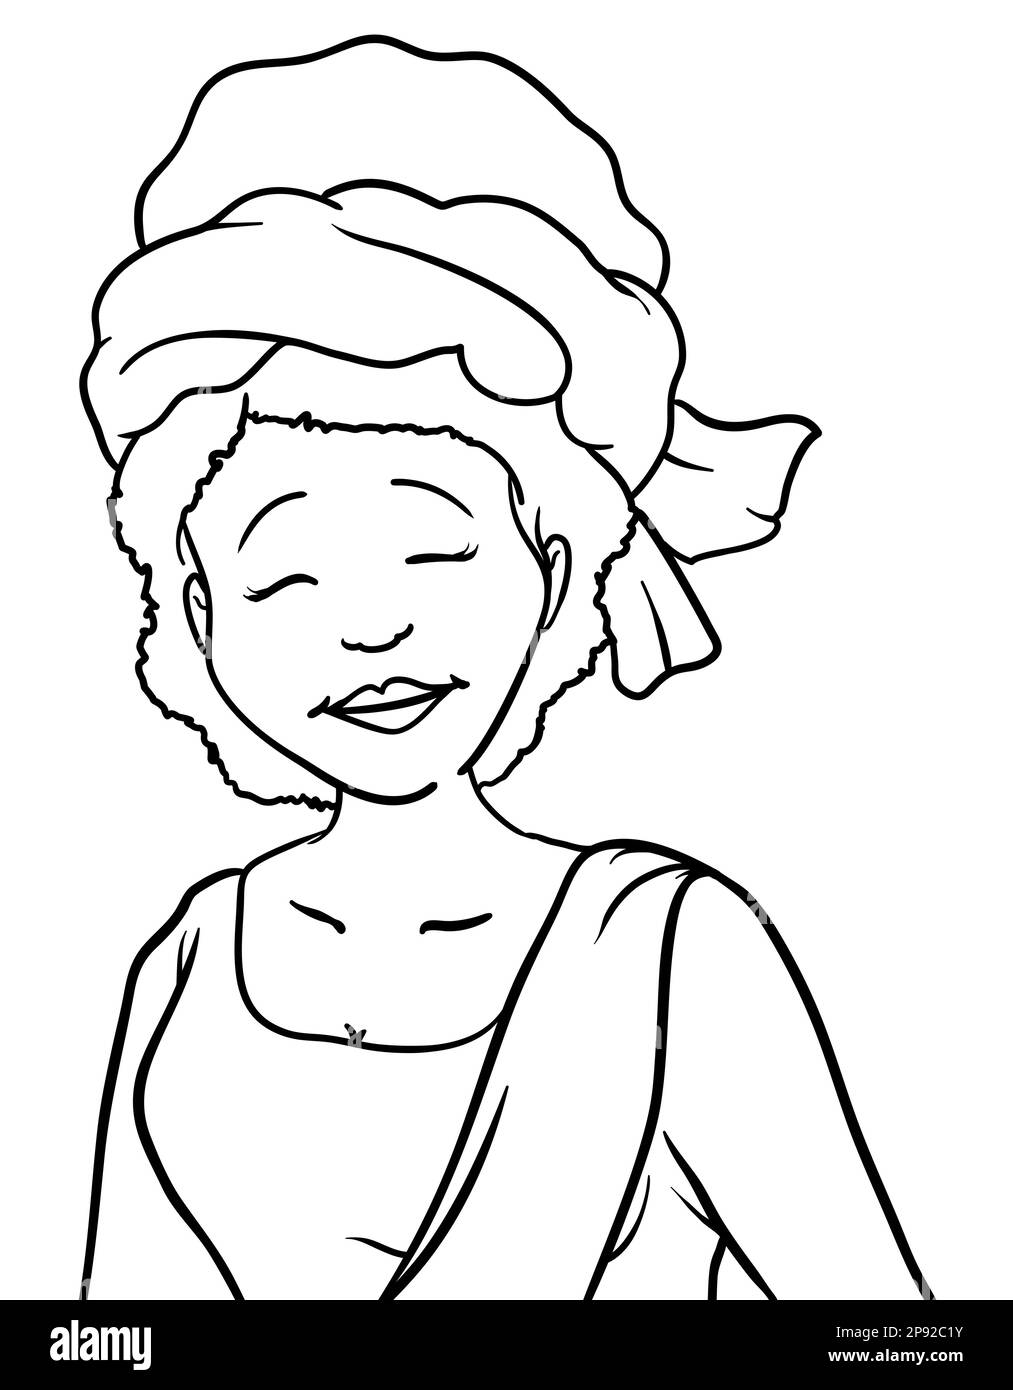 Femme africaine avec geste gai, turban et robe traditionnelle avec sash. Portrait dans les contours sur fond blanc. Illustration de Vecteur